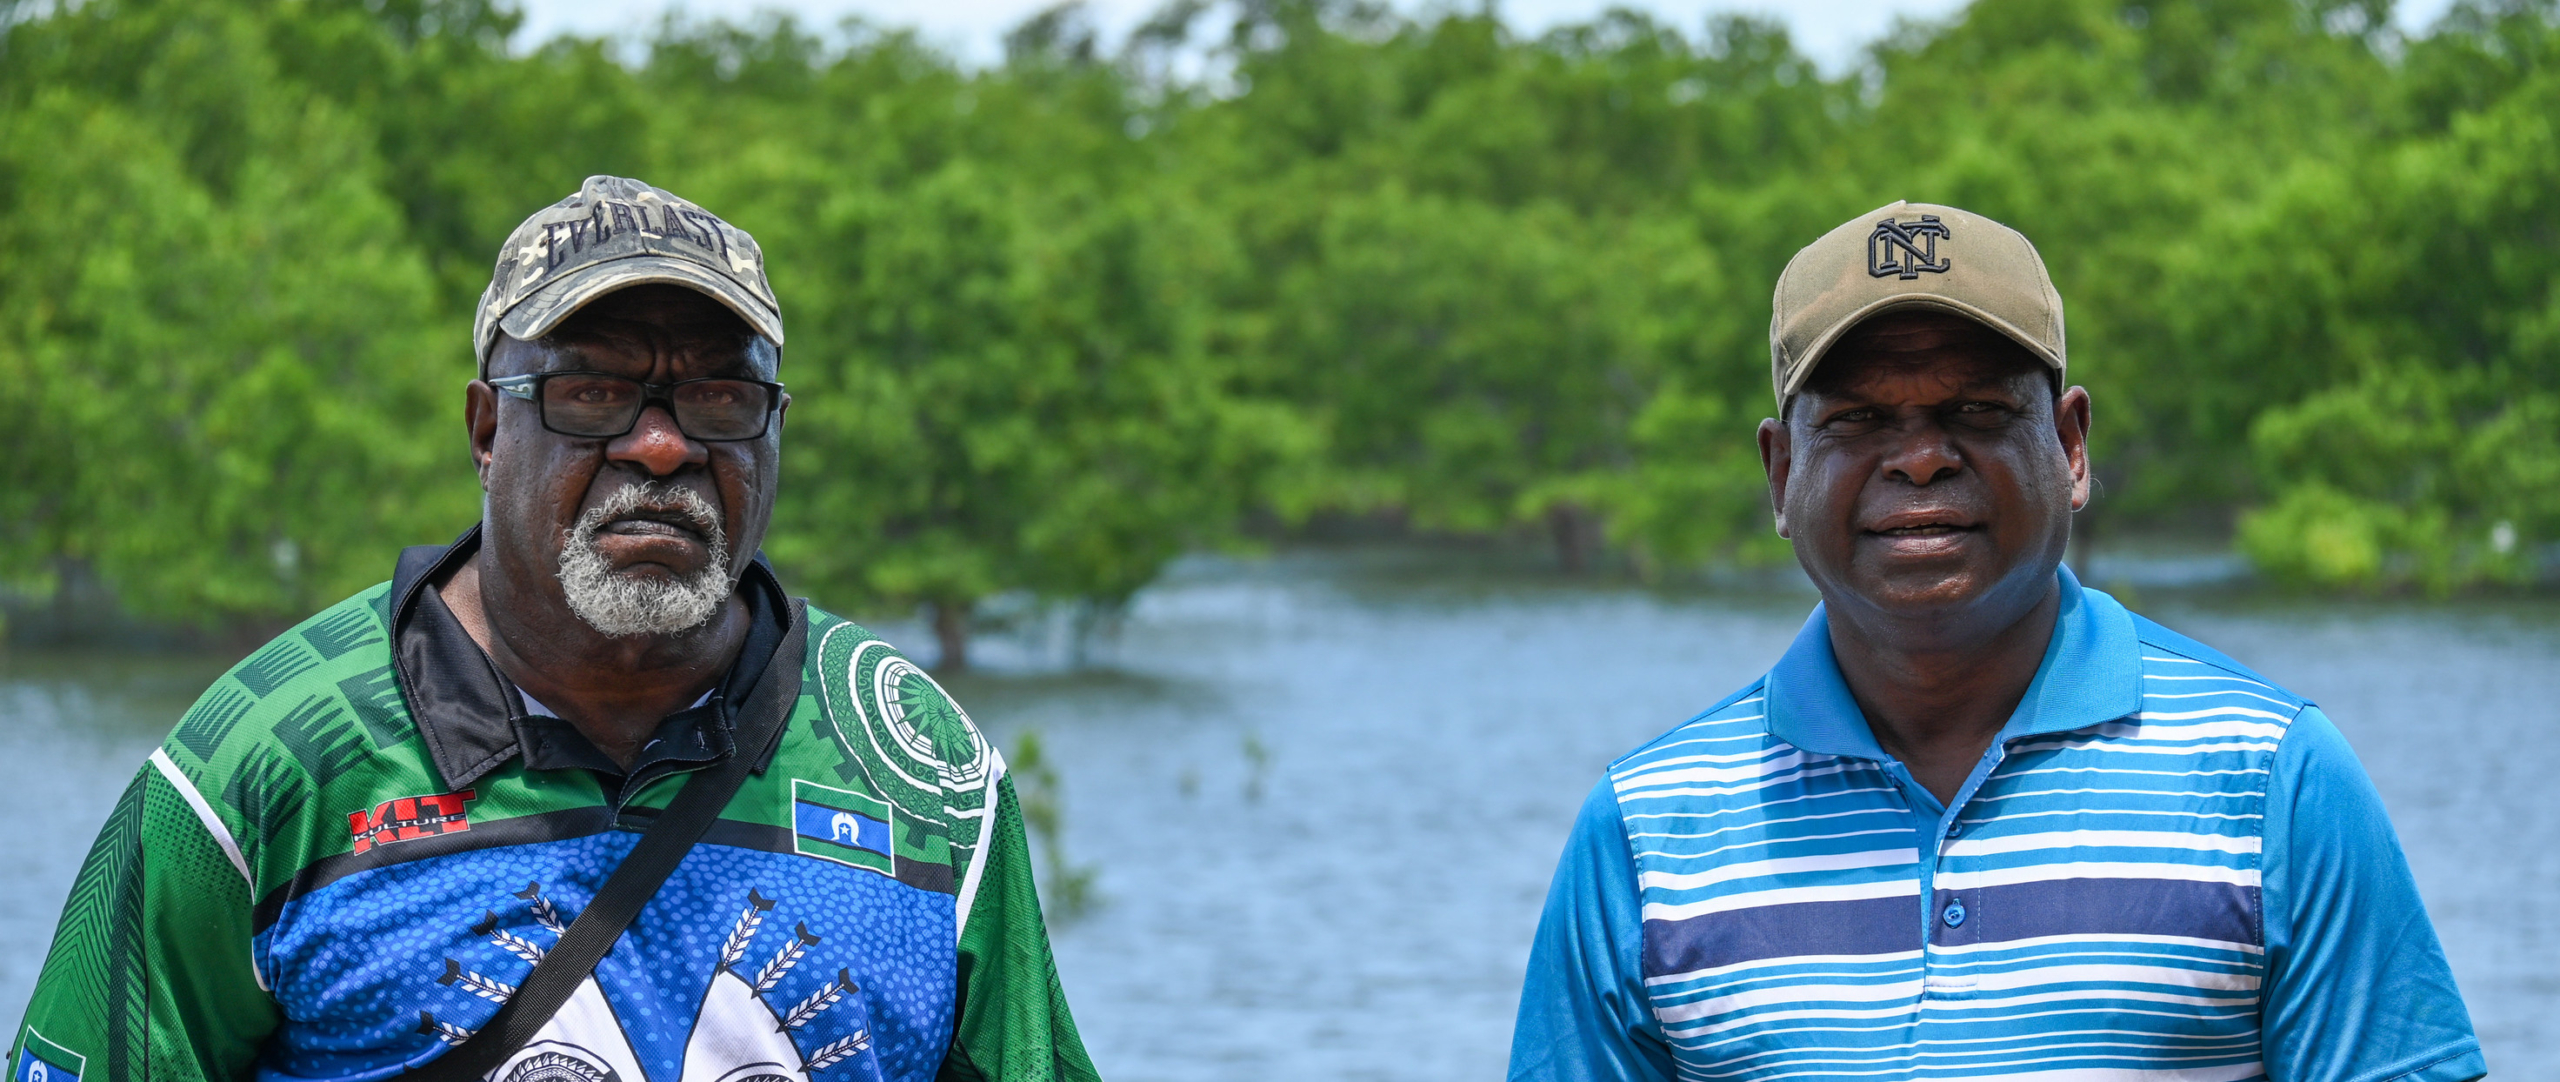 Uncle Pabai y Uncle Paul, líderes comunitarios de la nación Guda Maluyligal, posan junto a un río y frondosa vegetación.